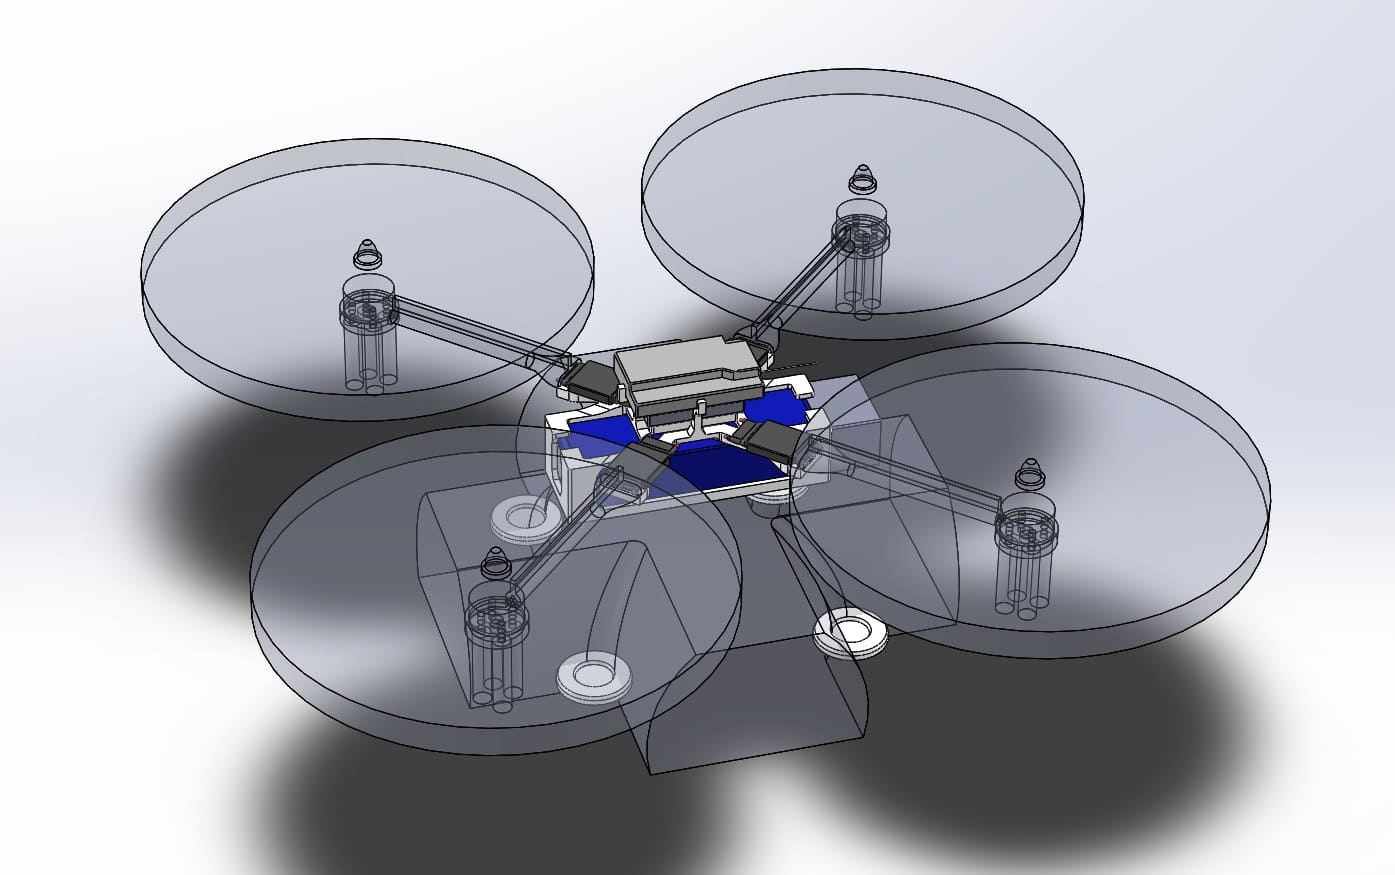 Розрахунки, оптимізація та моделювання рами дрону за допомогою штучного інтелекту в Autodesk Fusion 360